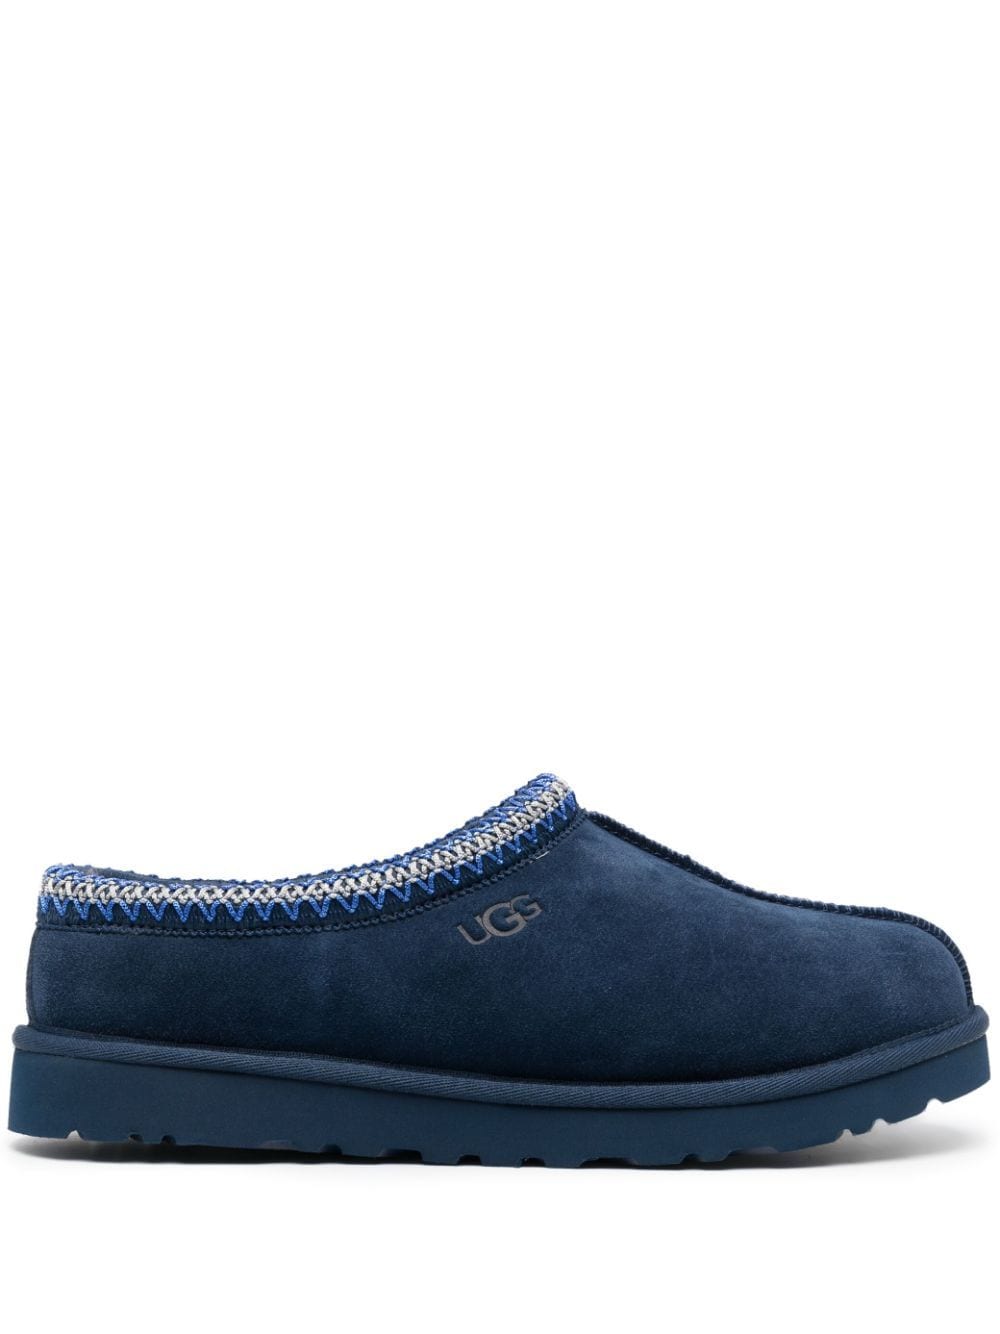 UGG Tasman suède slippers - Blauw